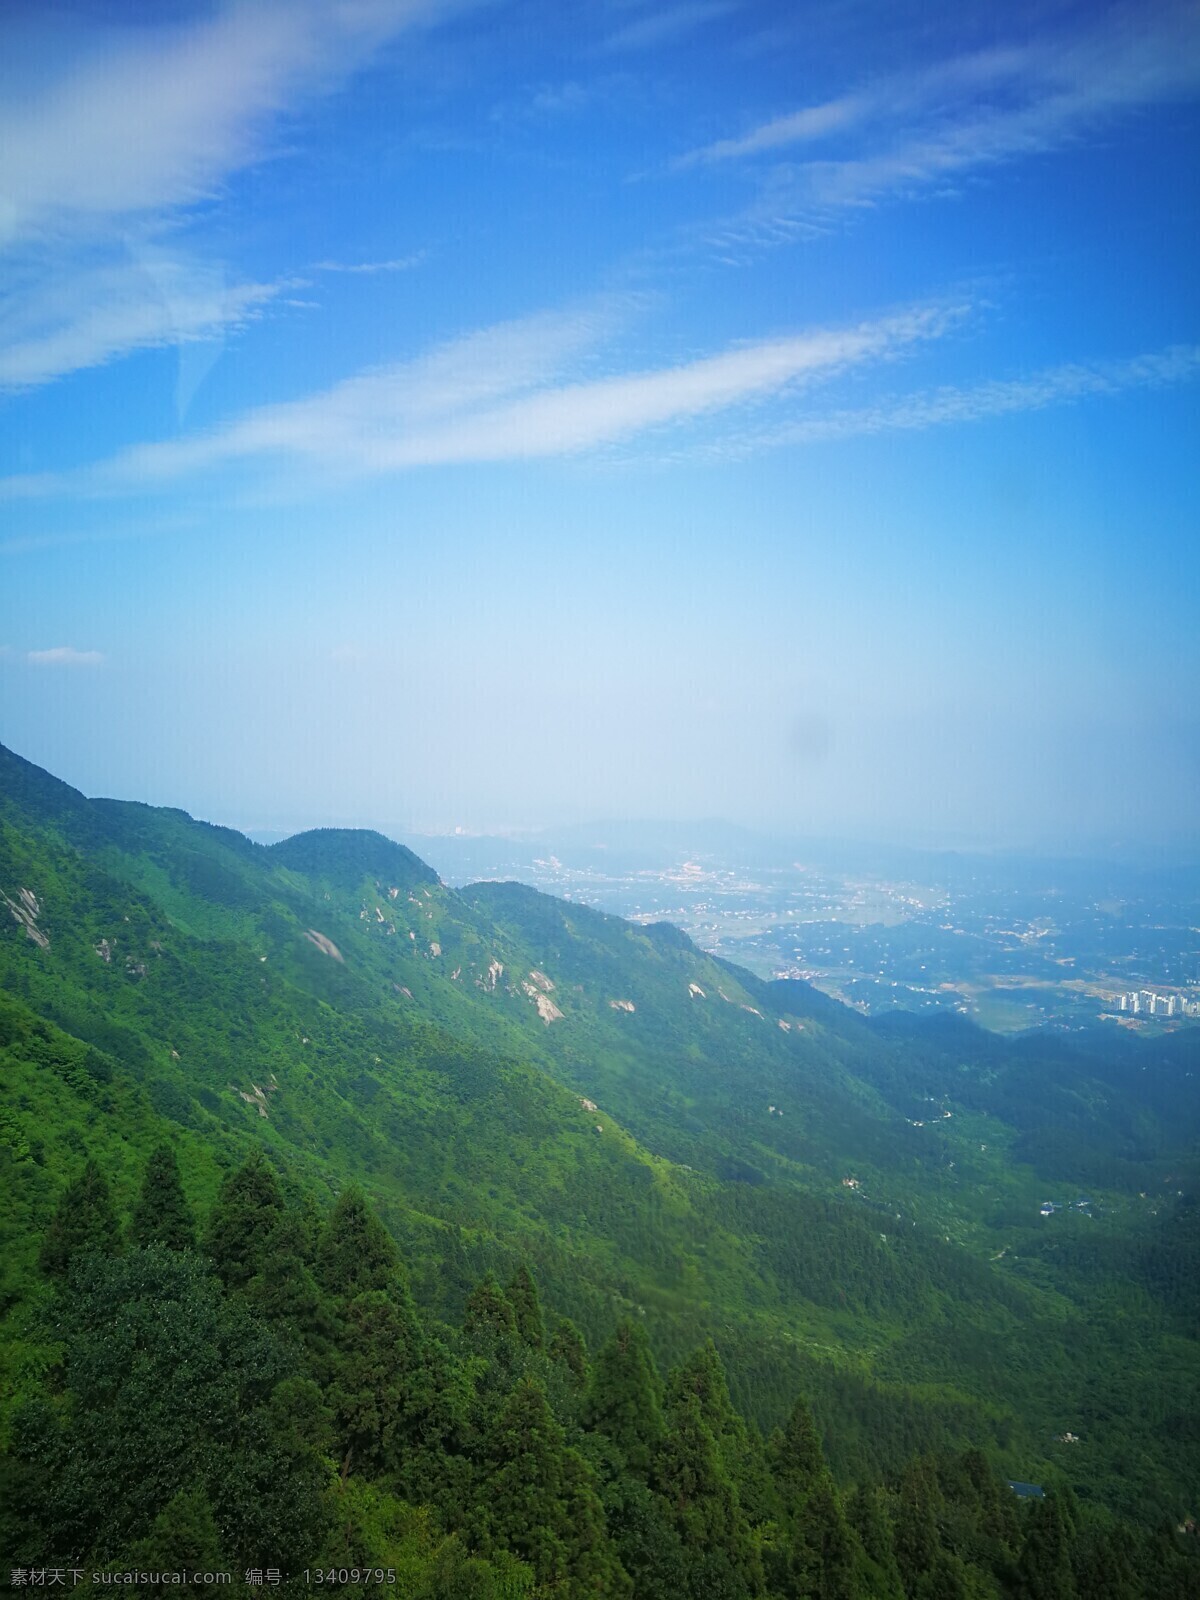 南岳衡山 高山 树木 山水图 蓝天白云 森林 旅游摄影 国内旅游